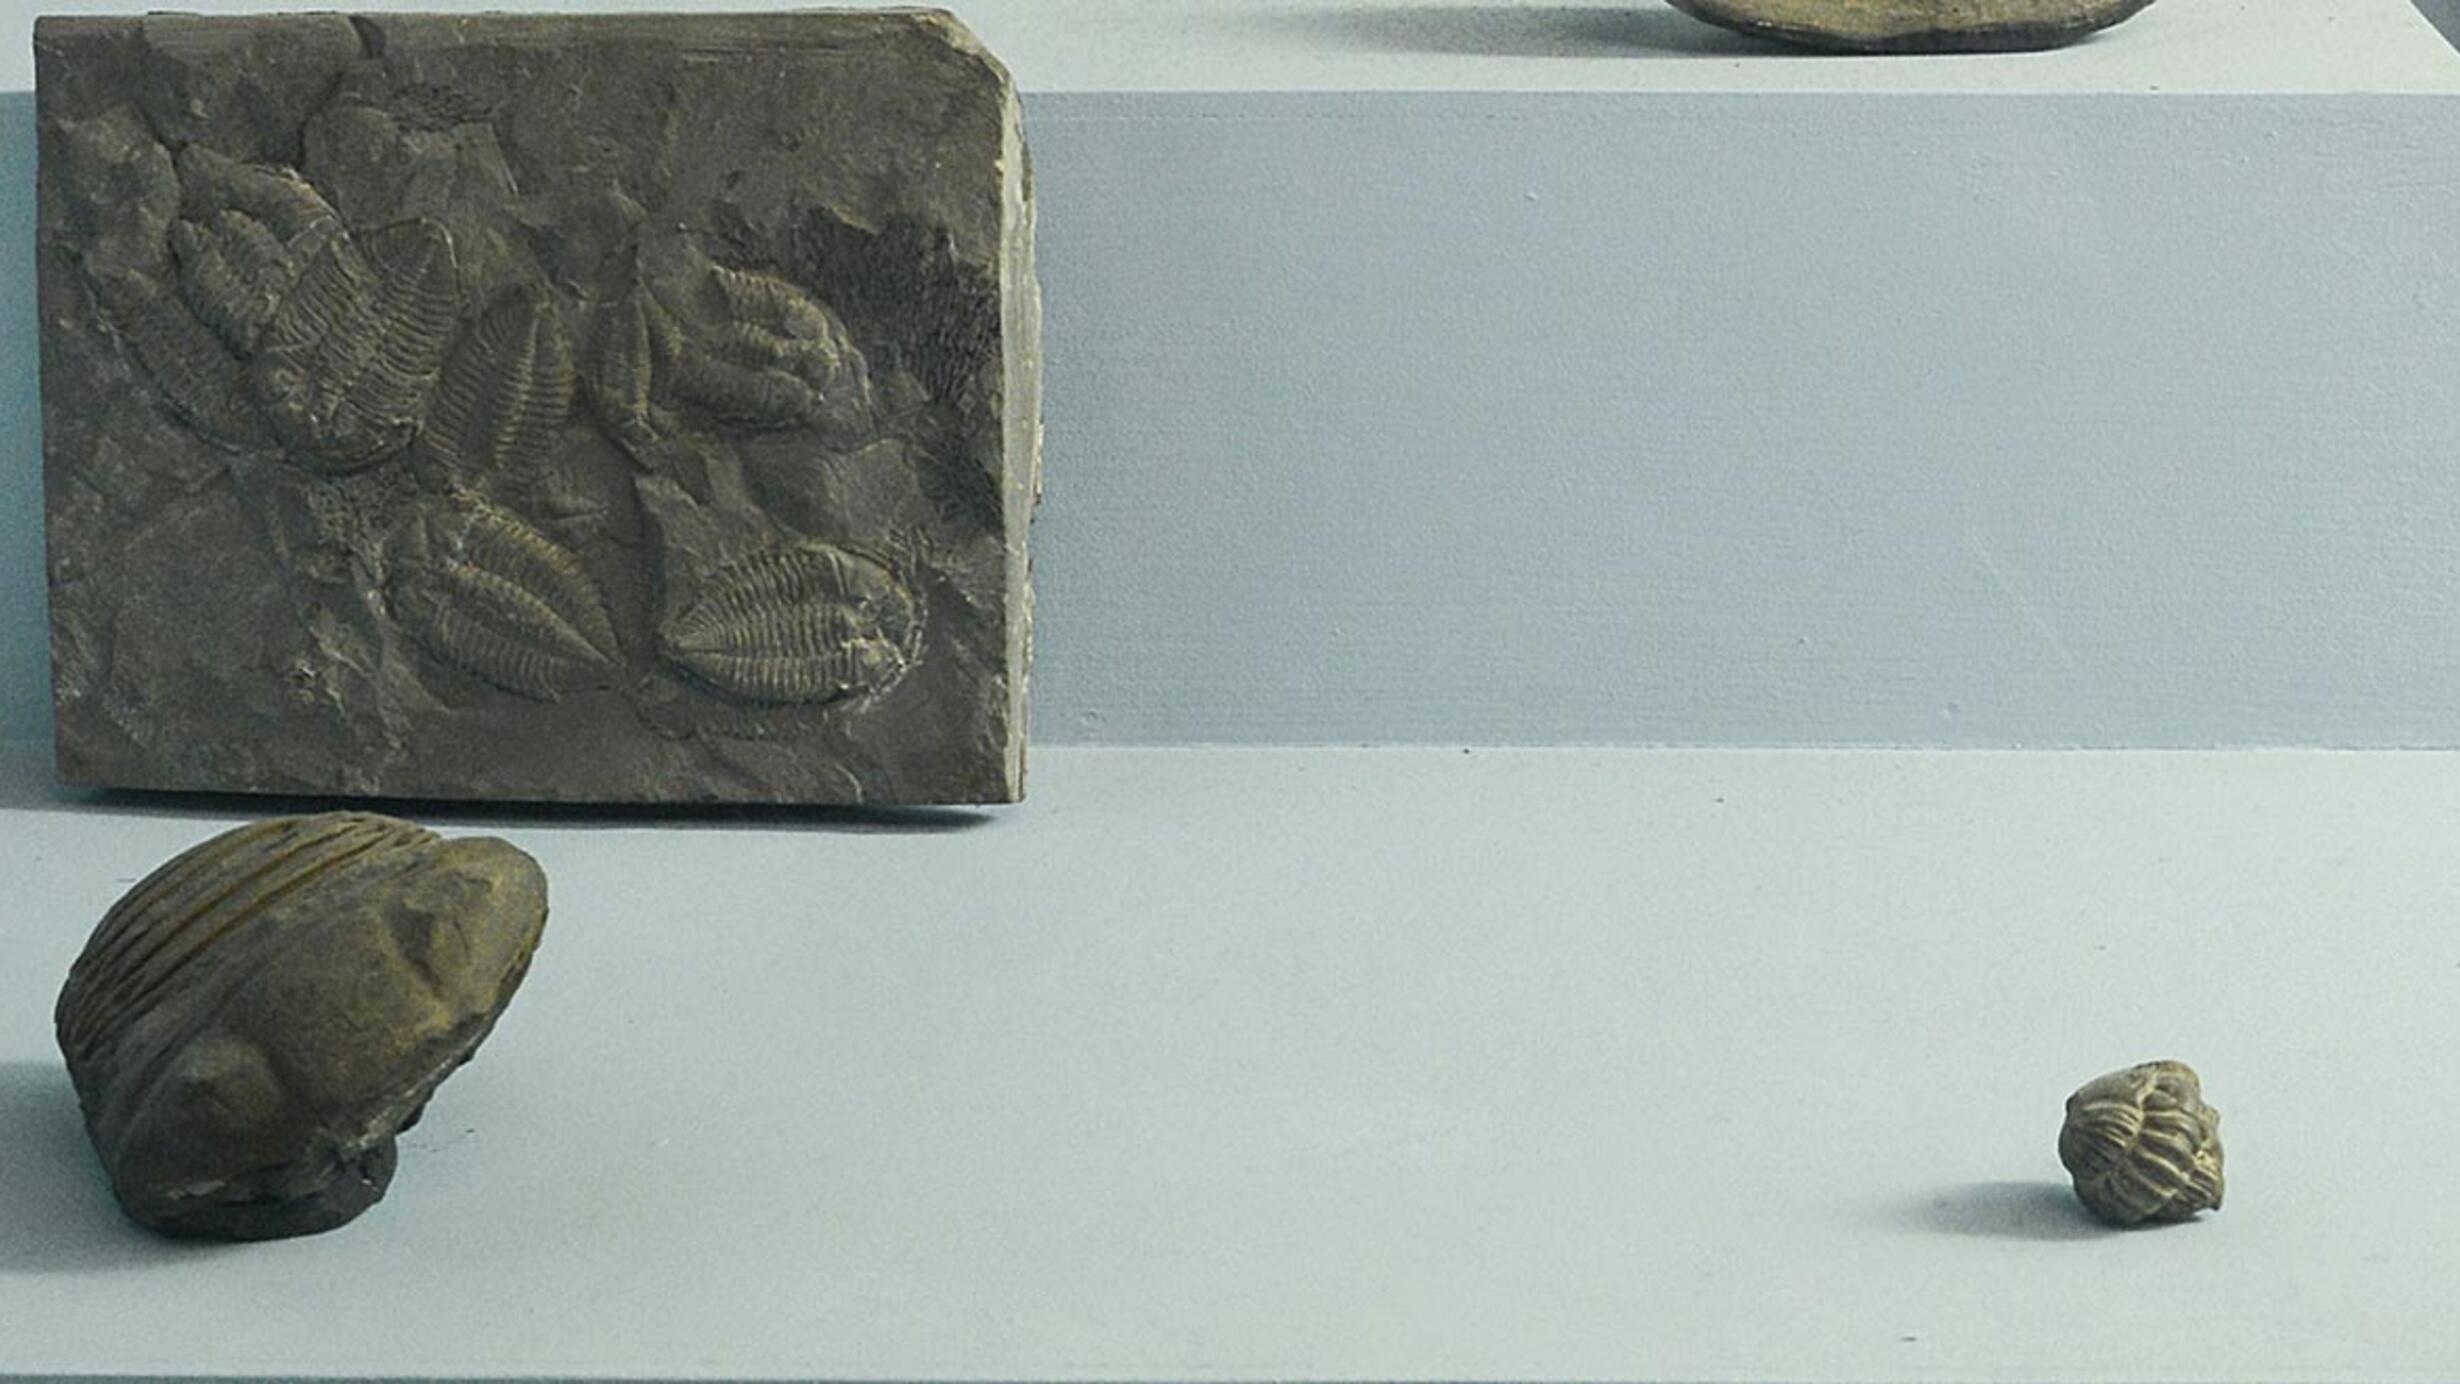 Trilobites in museum case